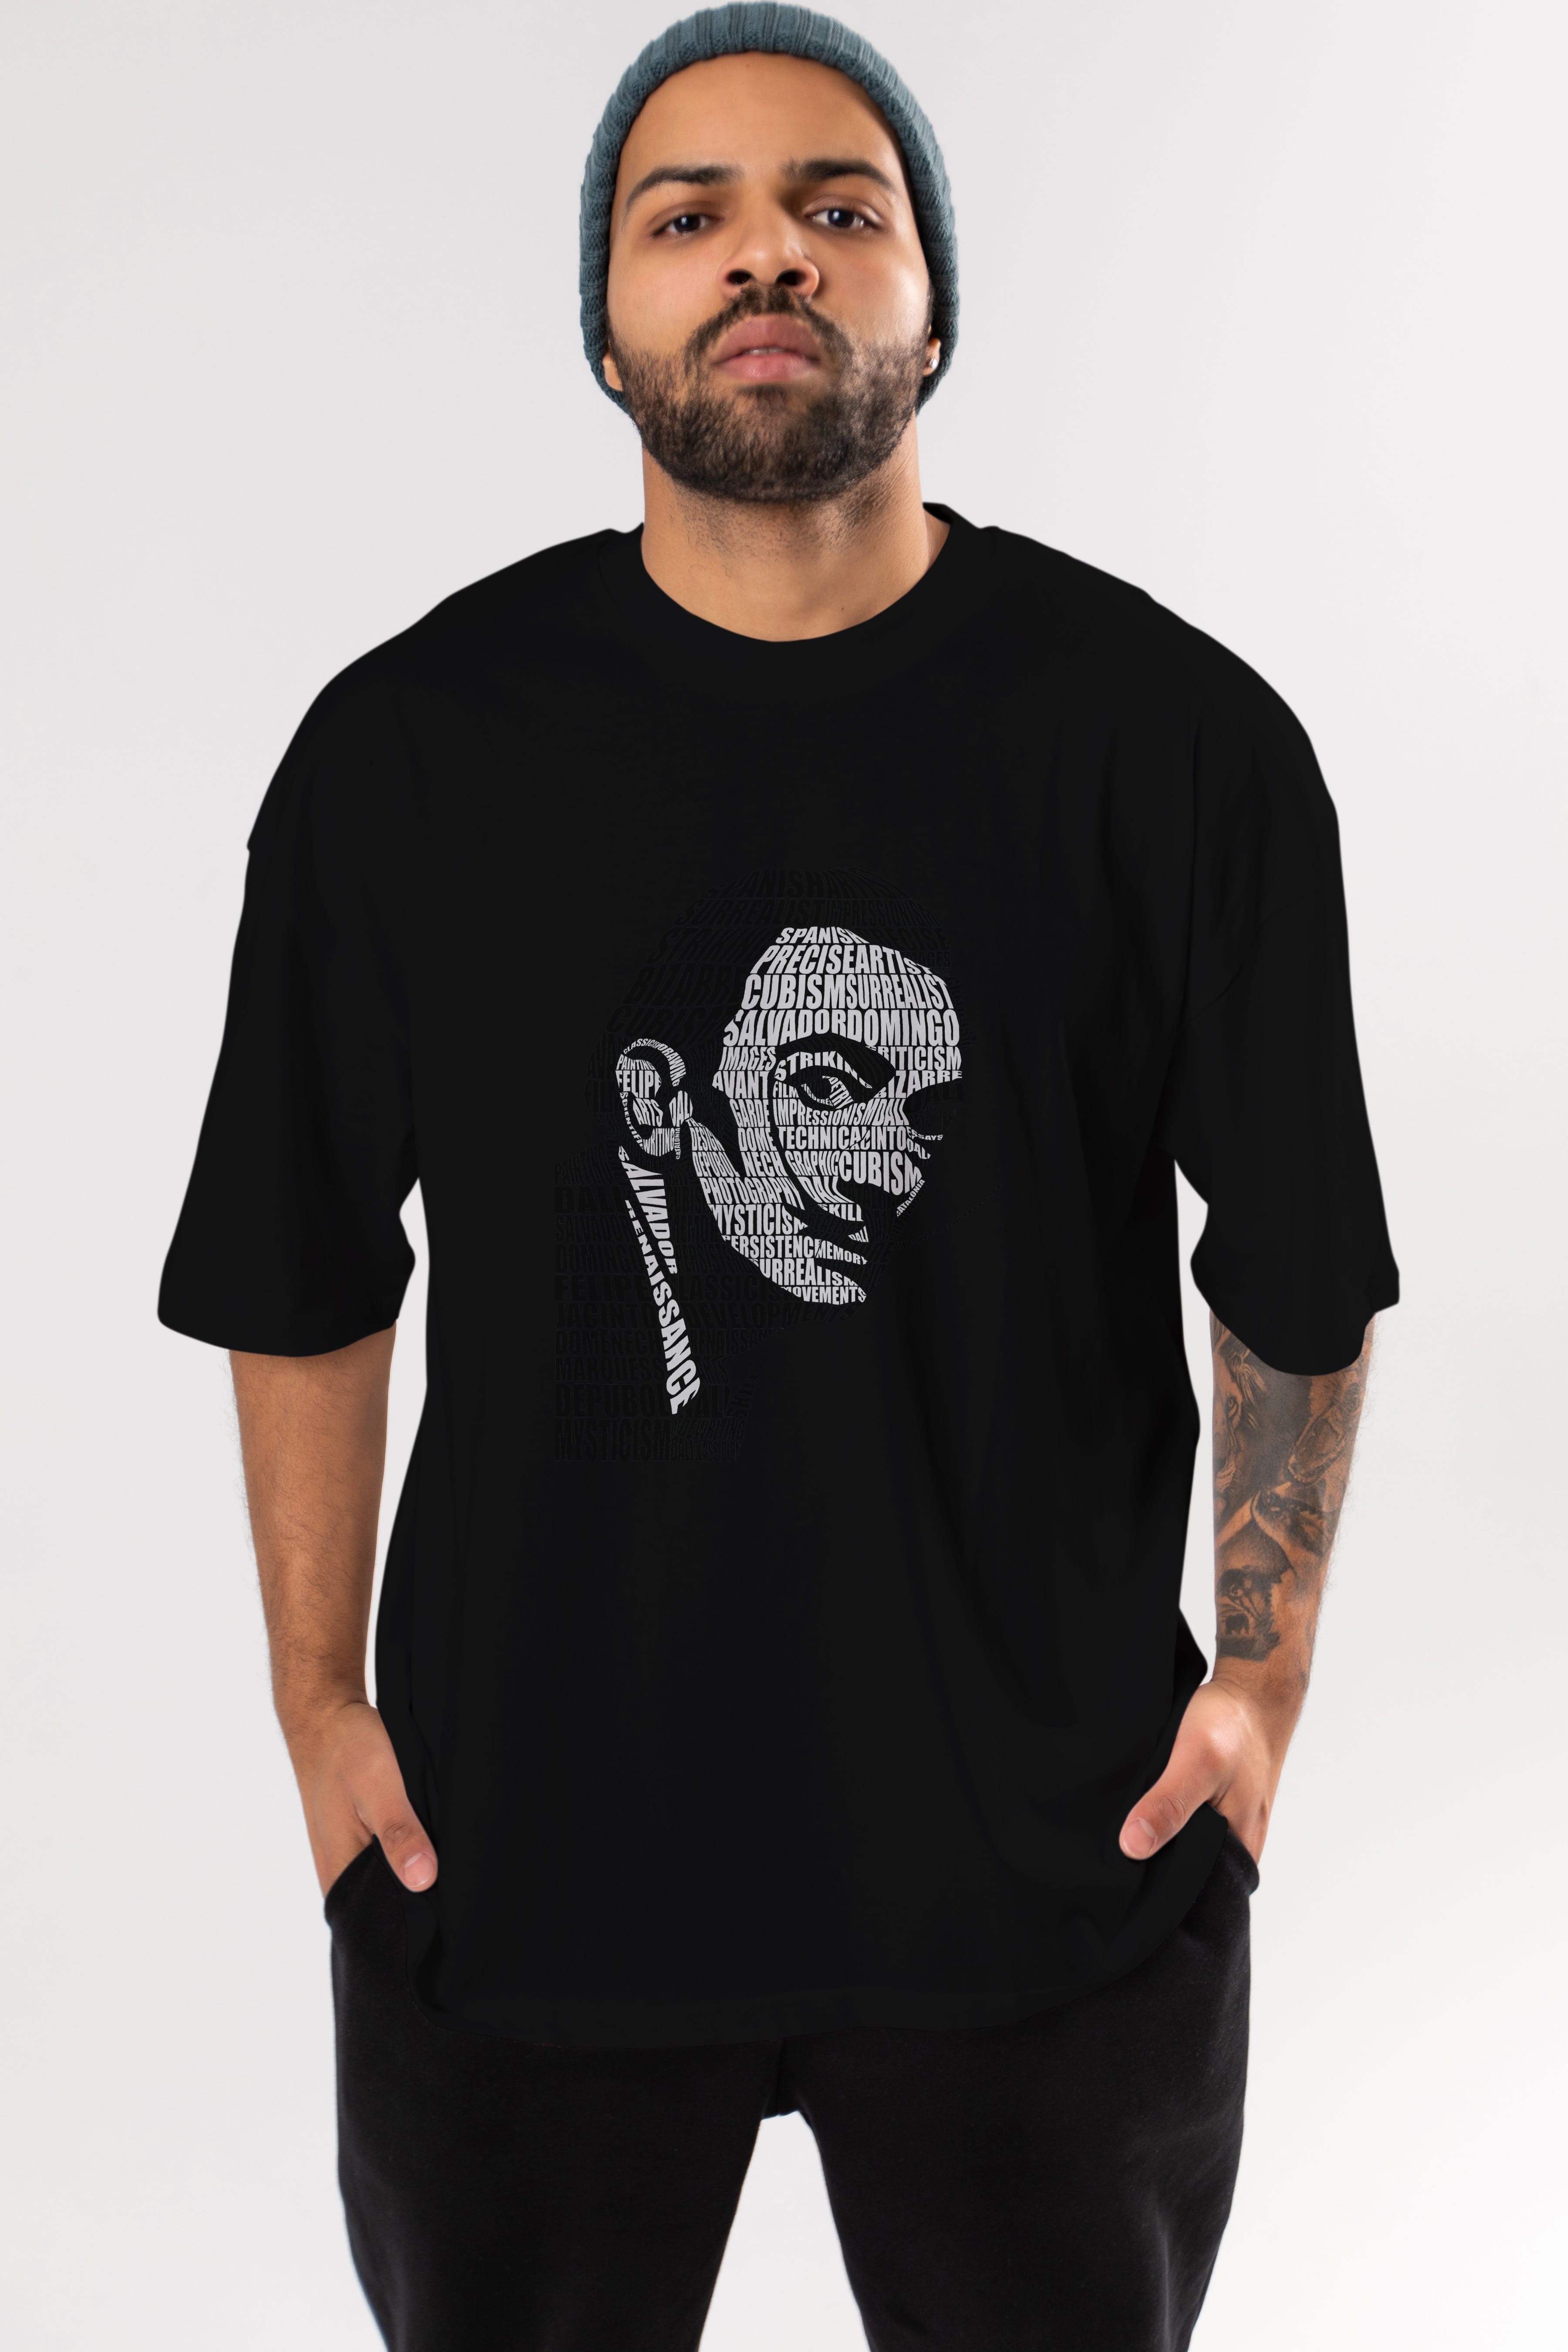 Salvador Dali Calligram Ön Baskılı Oversize t-shirt %100 pamuk Erkek Kadın Unisex